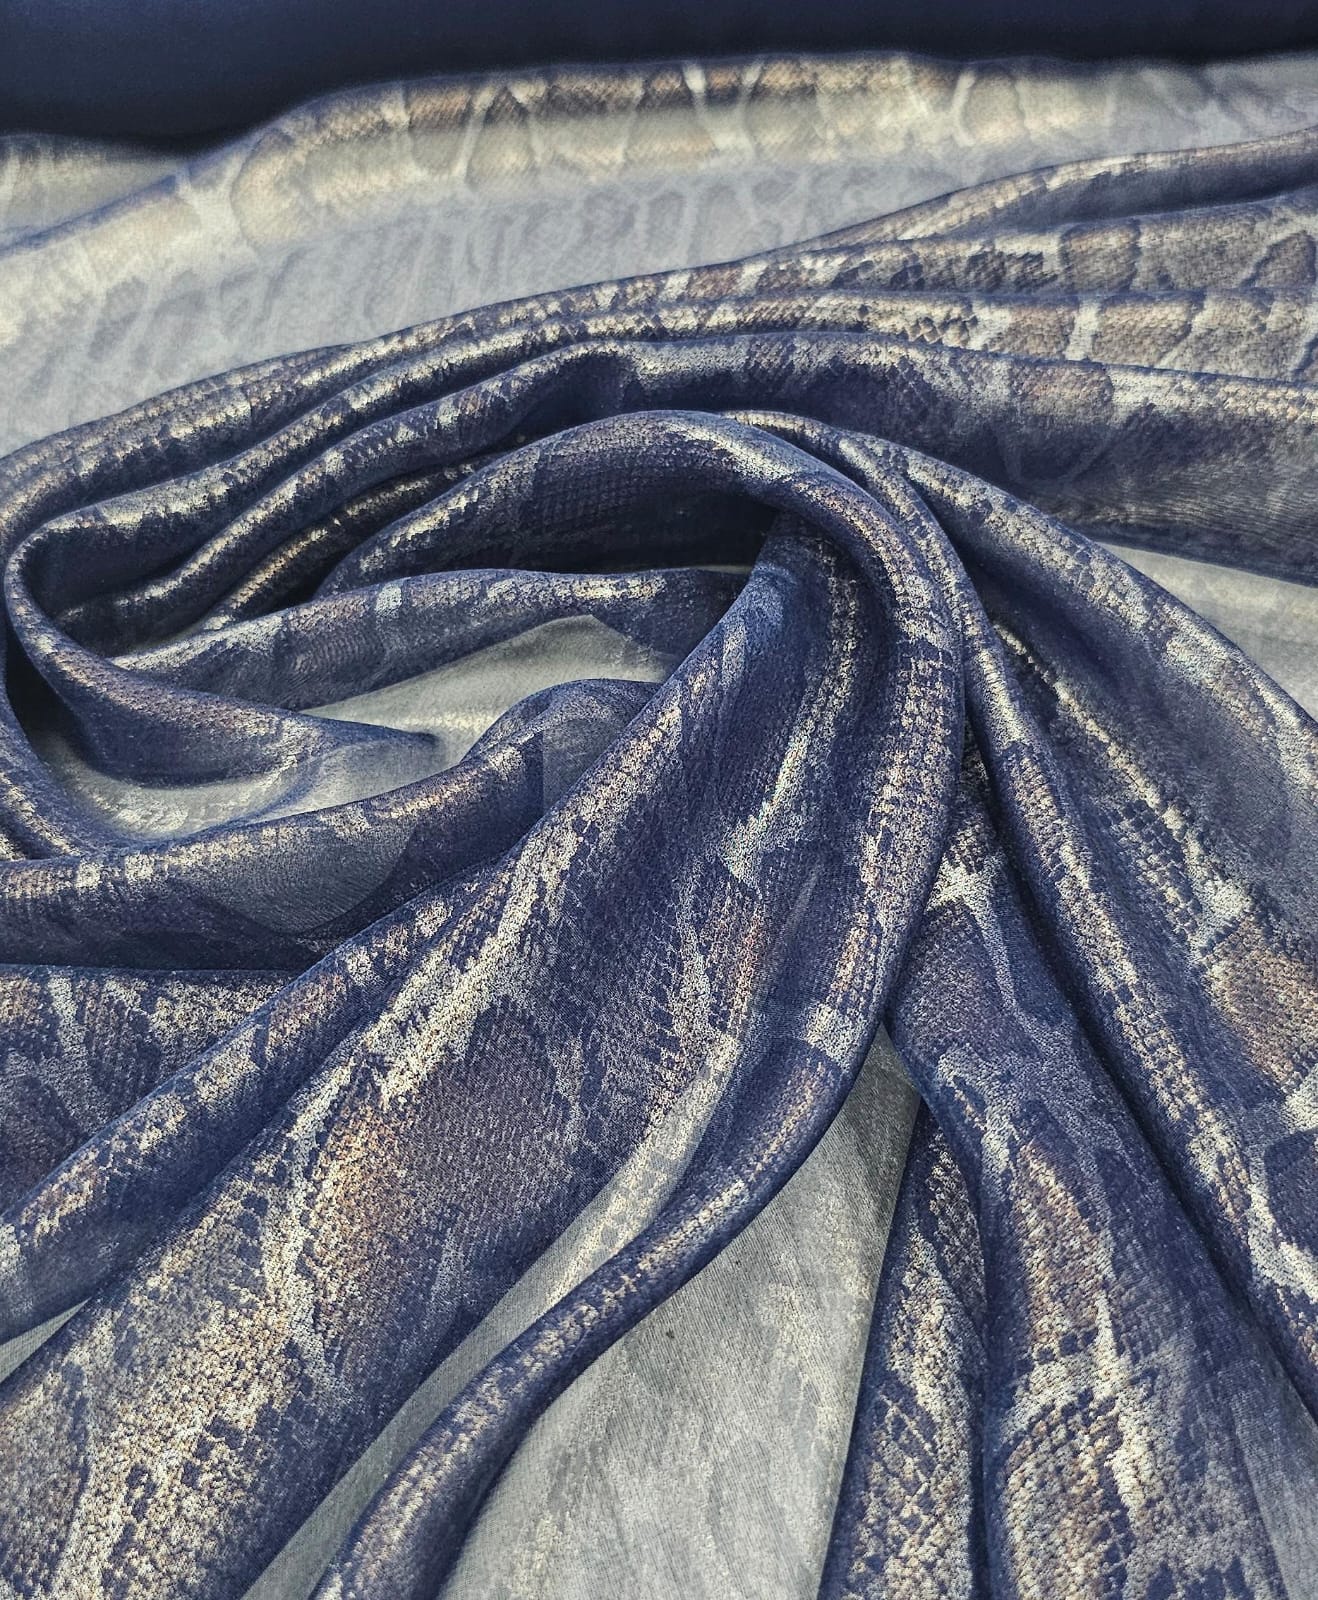 Mousseline Palha de Seda com Foil Snake Azul Marinho